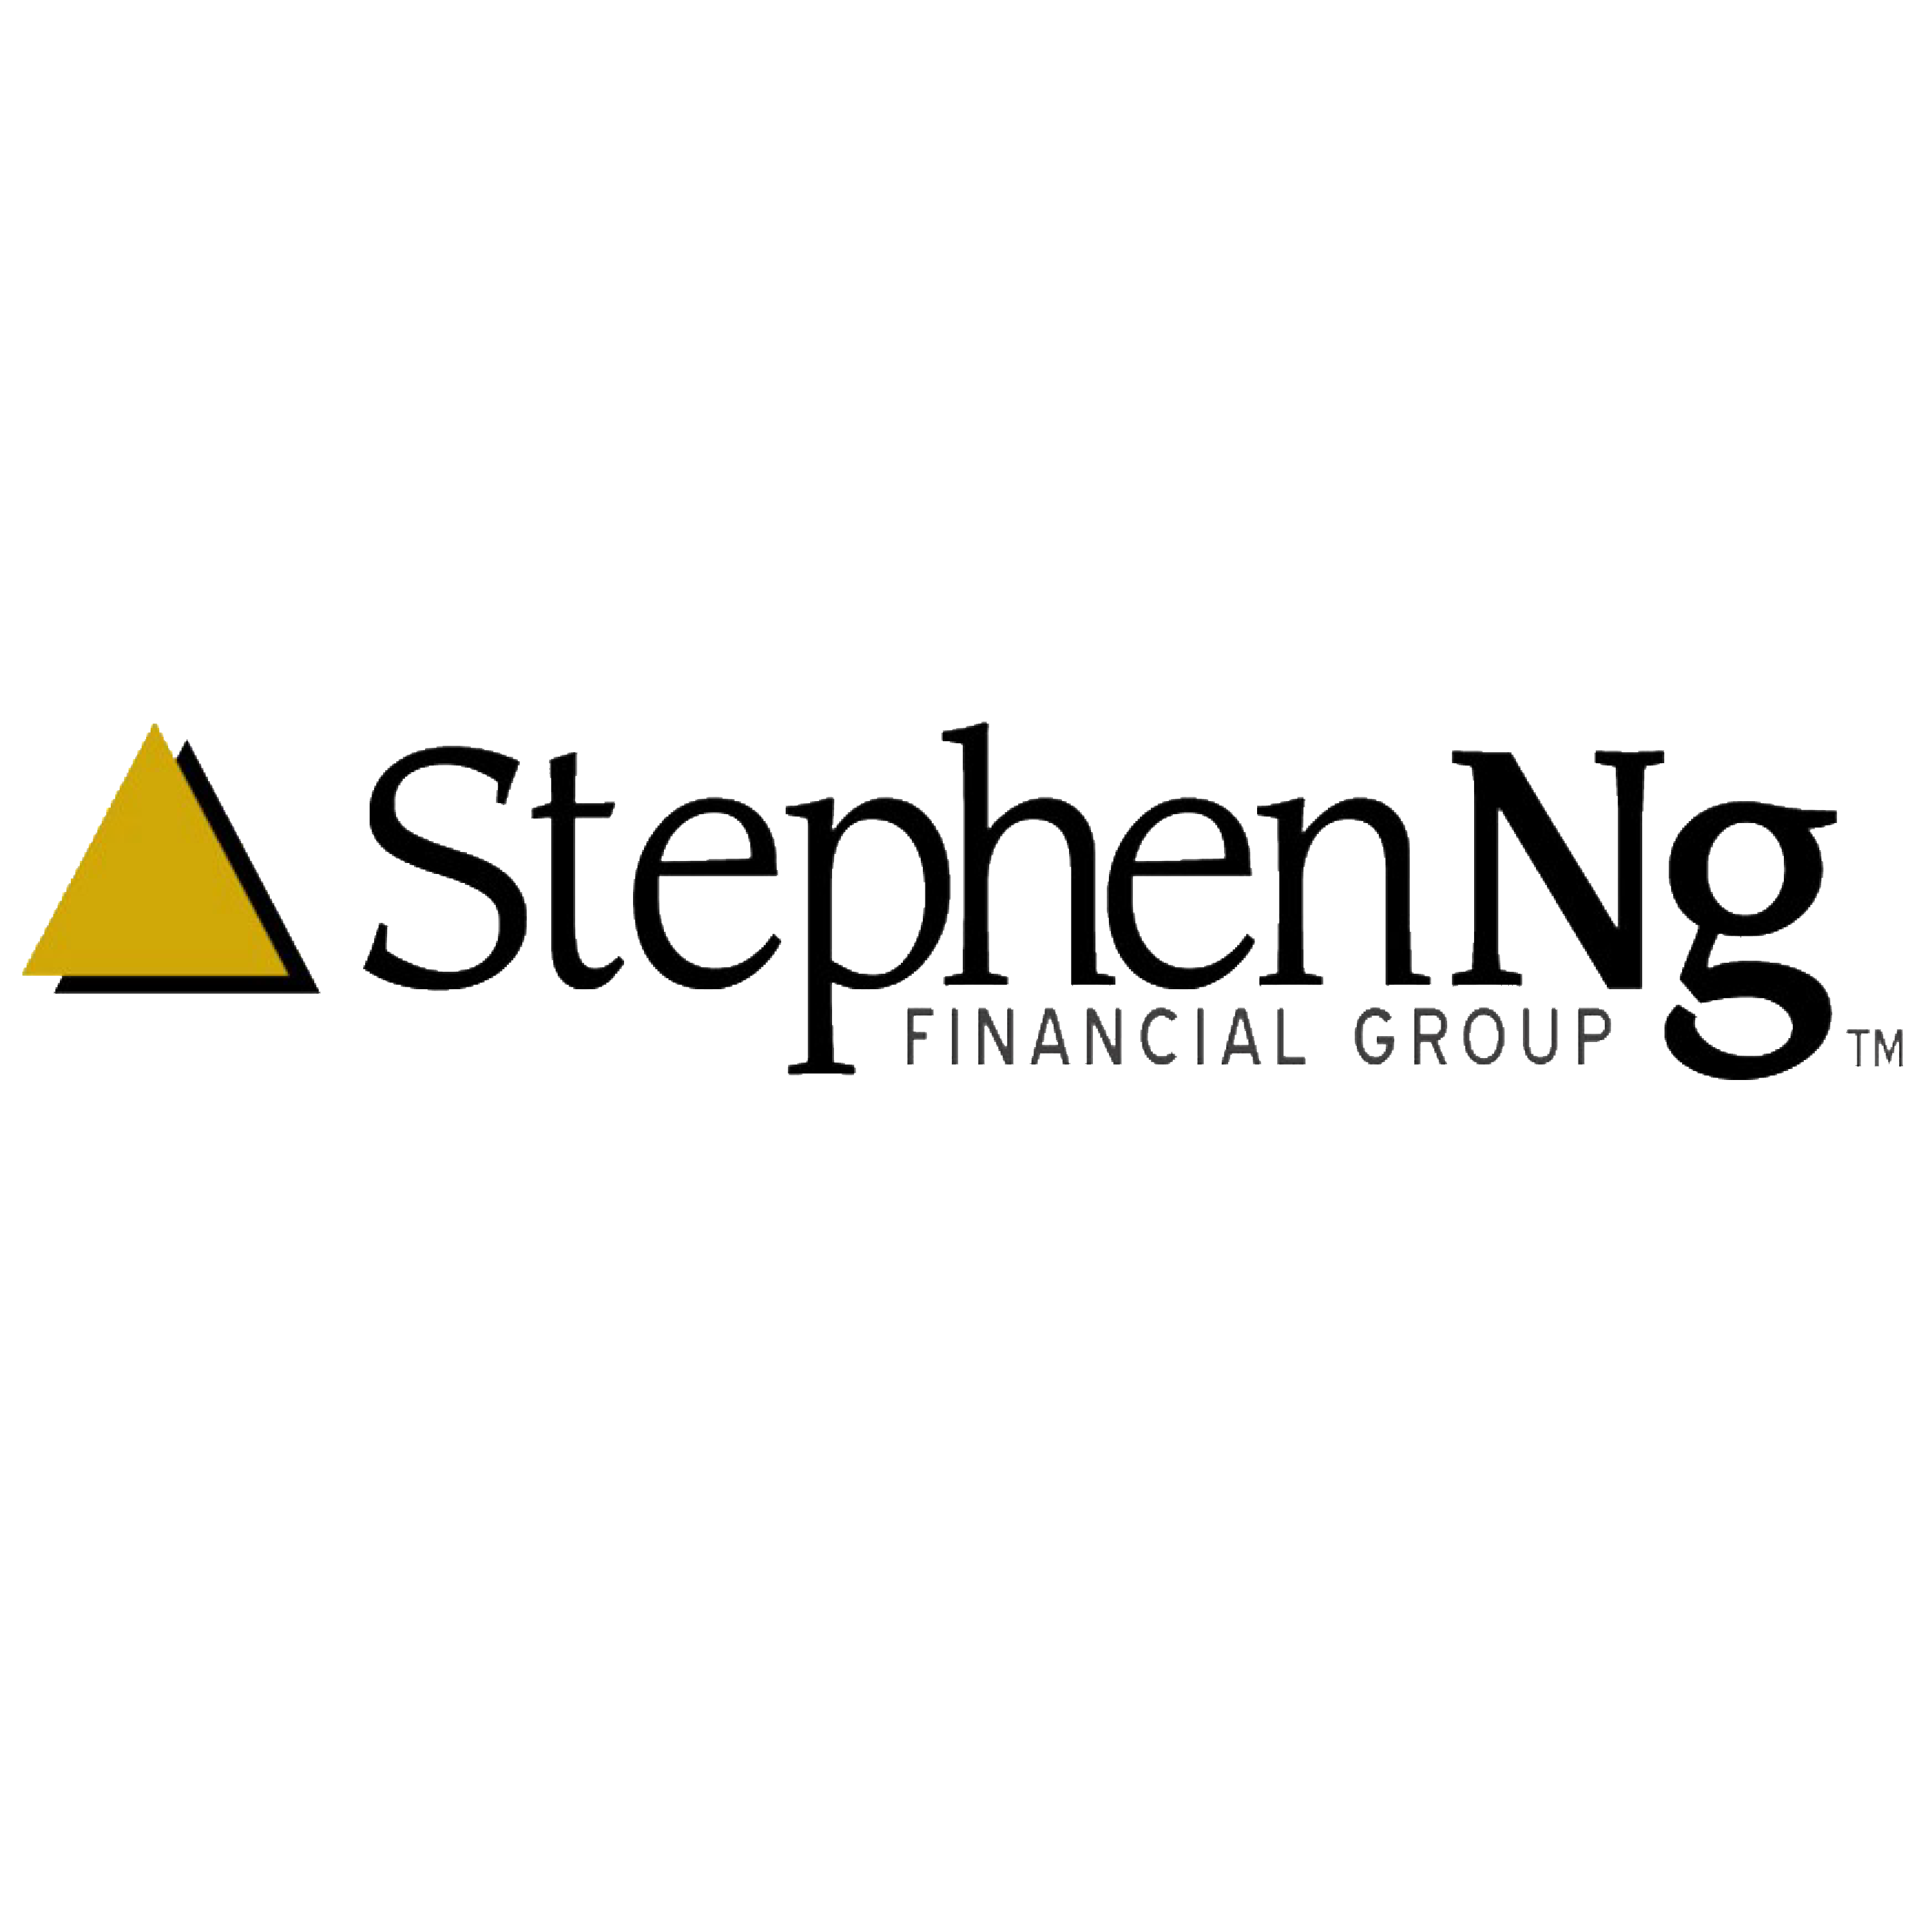 Stephen Ng Financial Group